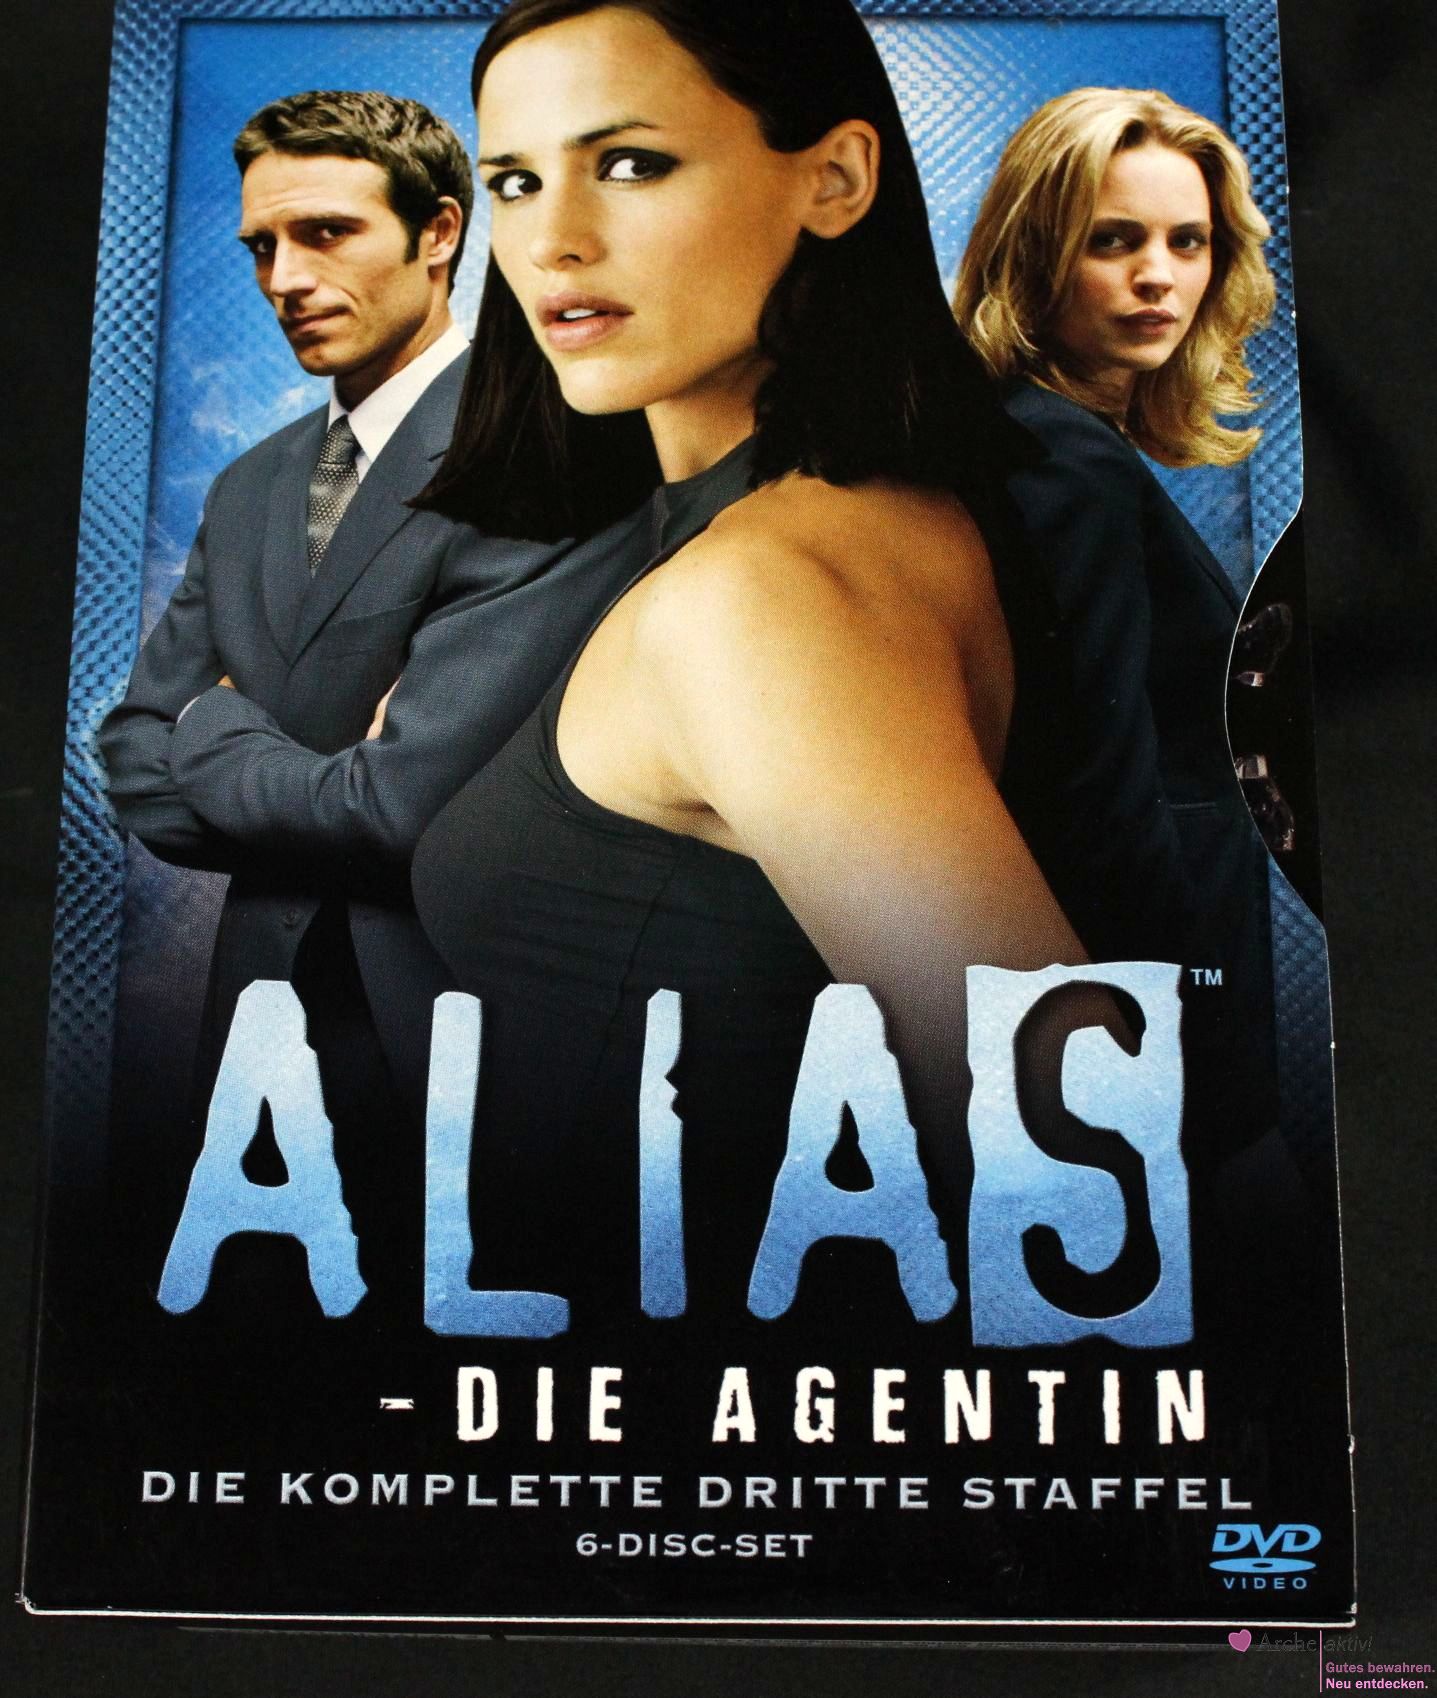 Alias - Die Agentin, 3. Staffel, 6 DVDs mit Schuber, gebraucht